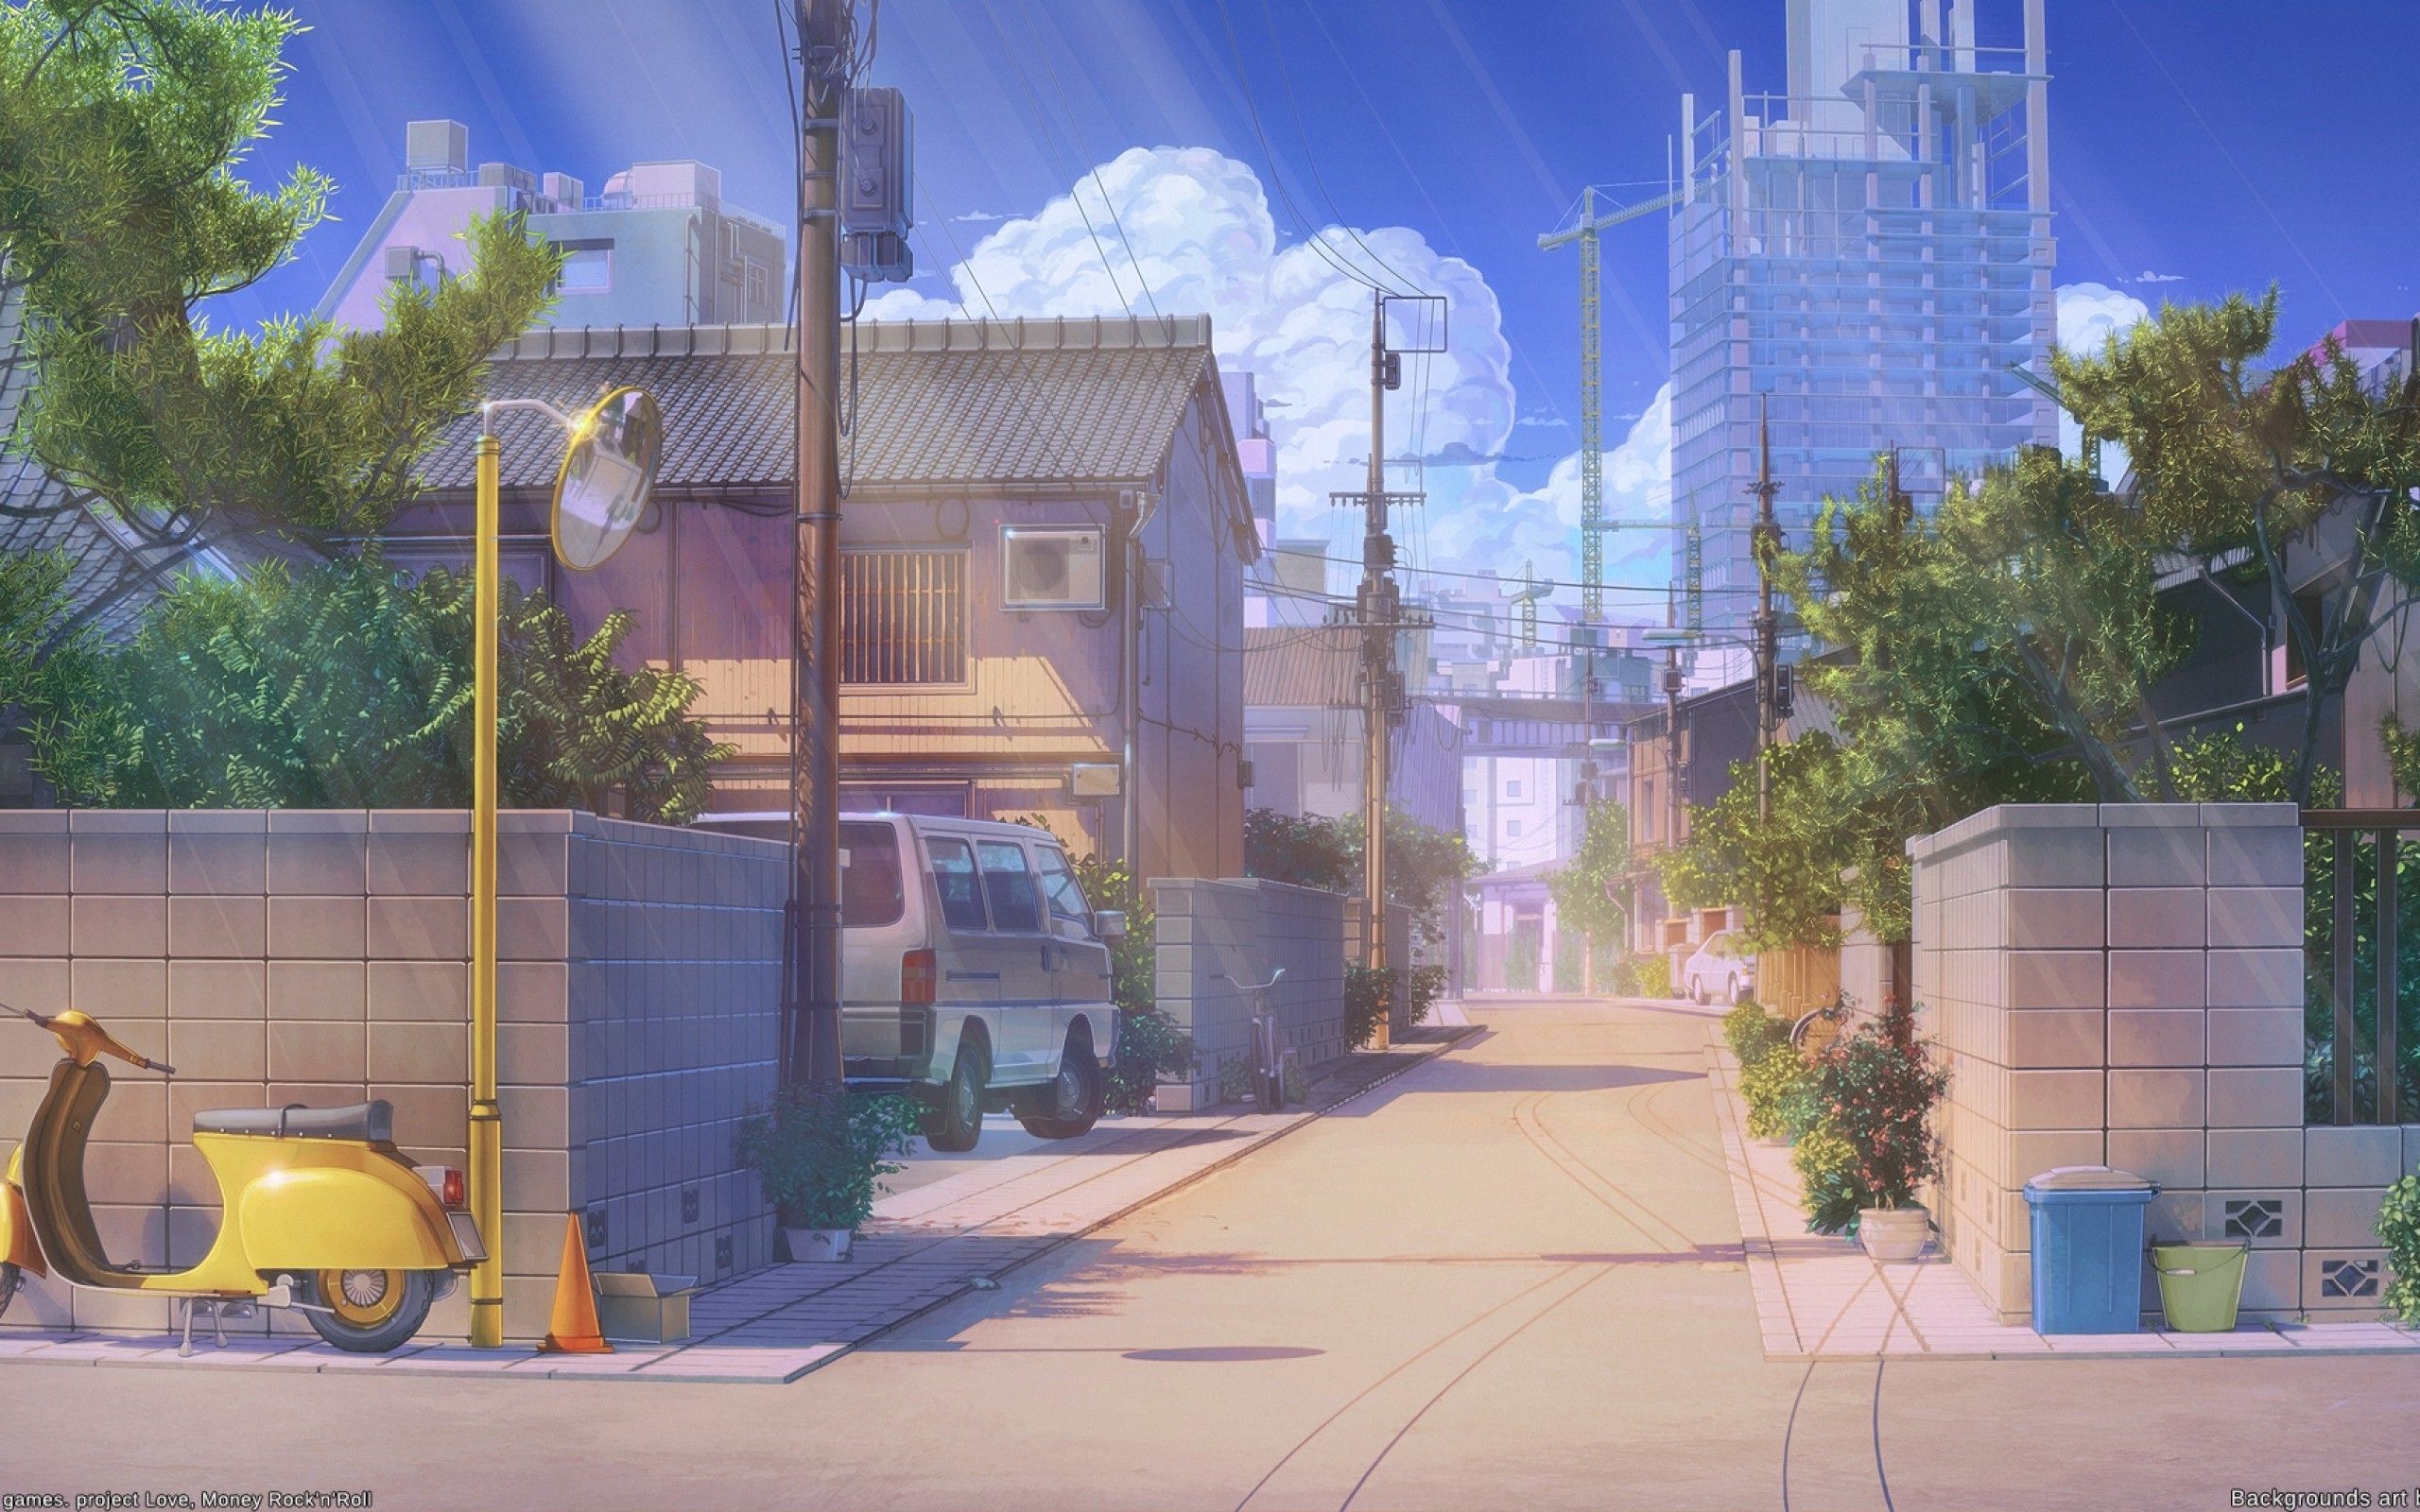 Hình nền anime đường phố sẽ làm cho bạn cảm thấy như đang tham gia vào một cuộc phiêu lưu thật sự trên đường phố của một thế giới thần tiên. Những hình ảnh này sẽ đánh thức trí tưởng tượng của bạn và giúp bạn xây dựng một câu chuyện của riêng mình.